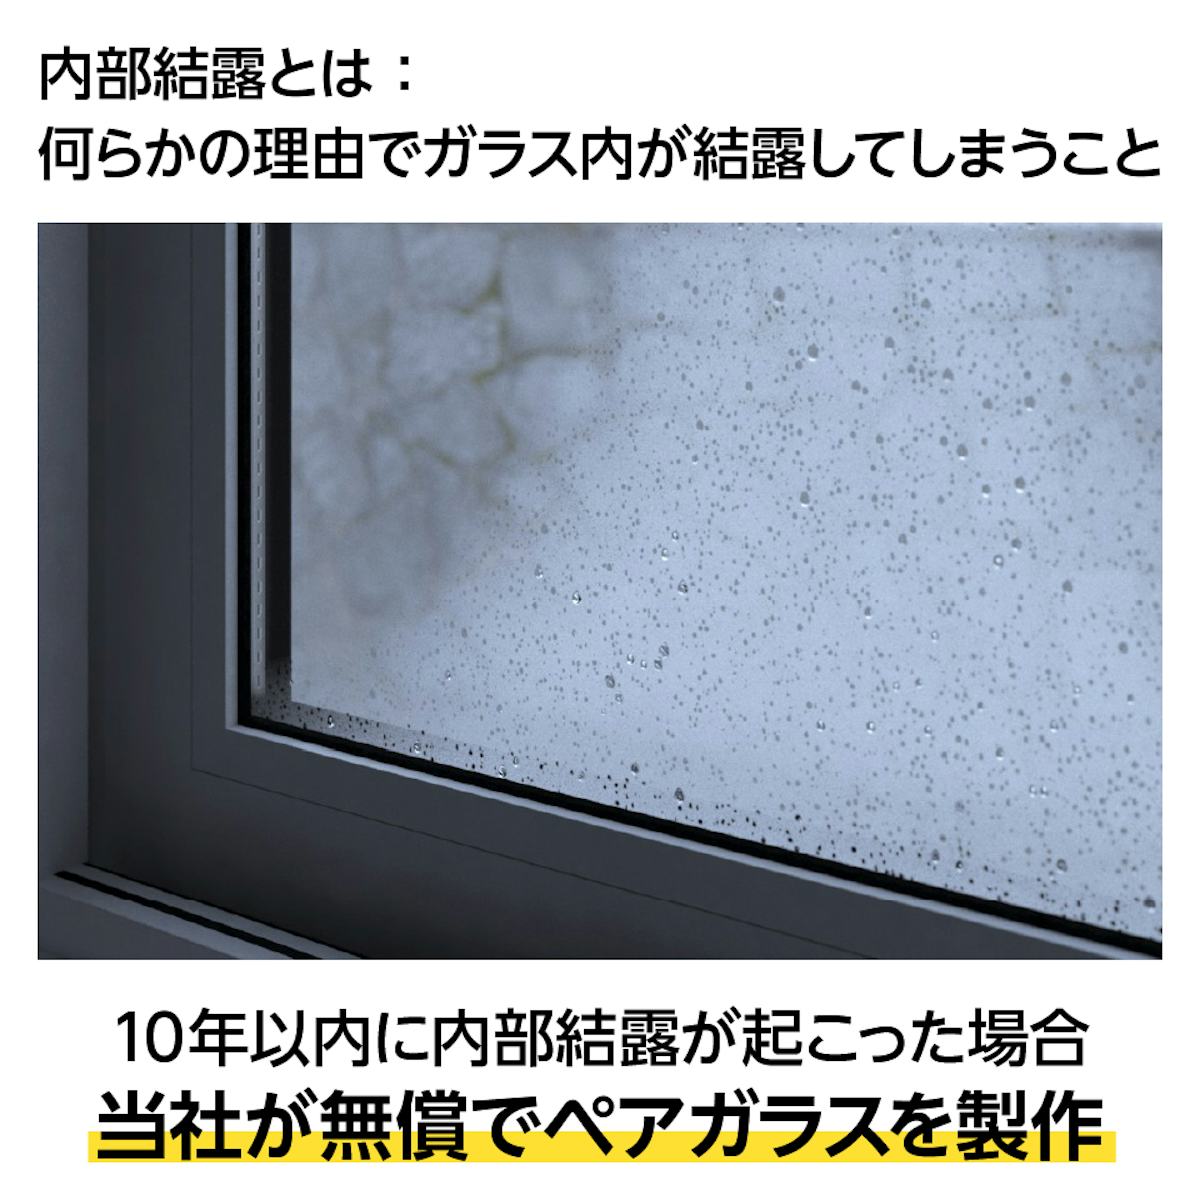 「結露防止ガラス プレミアム」の窓に内部結露が起きた場合に備えた保証がある